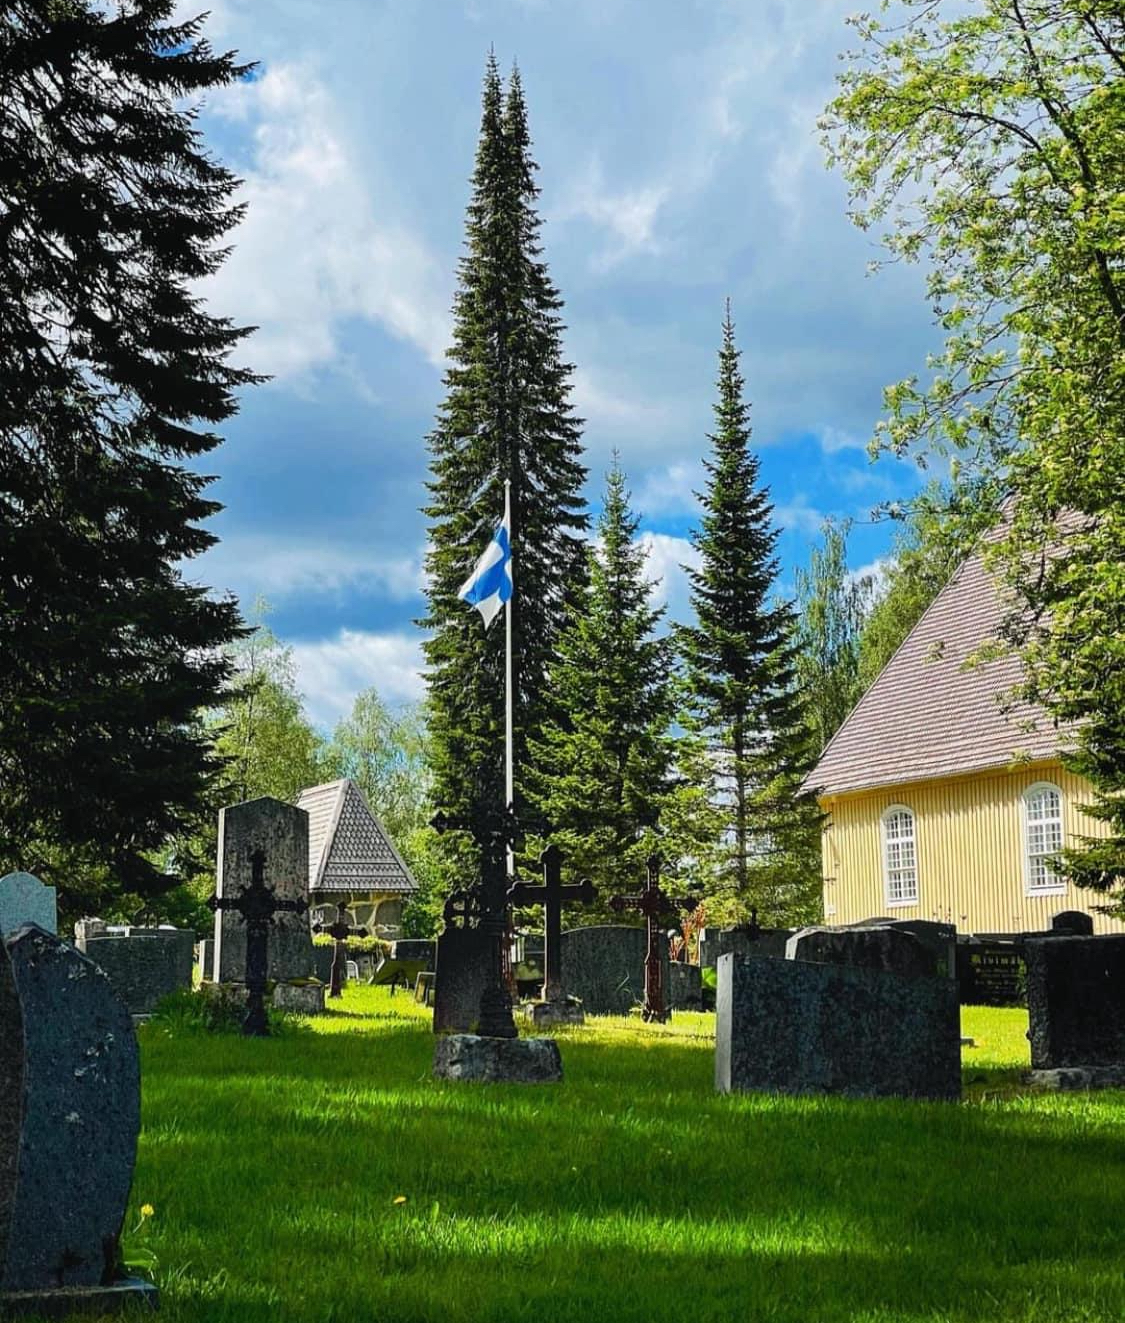 Keltainen kirkko, hautausmaa ja kirkkopuisto, kesäkuva. Suomen lippu salossa.